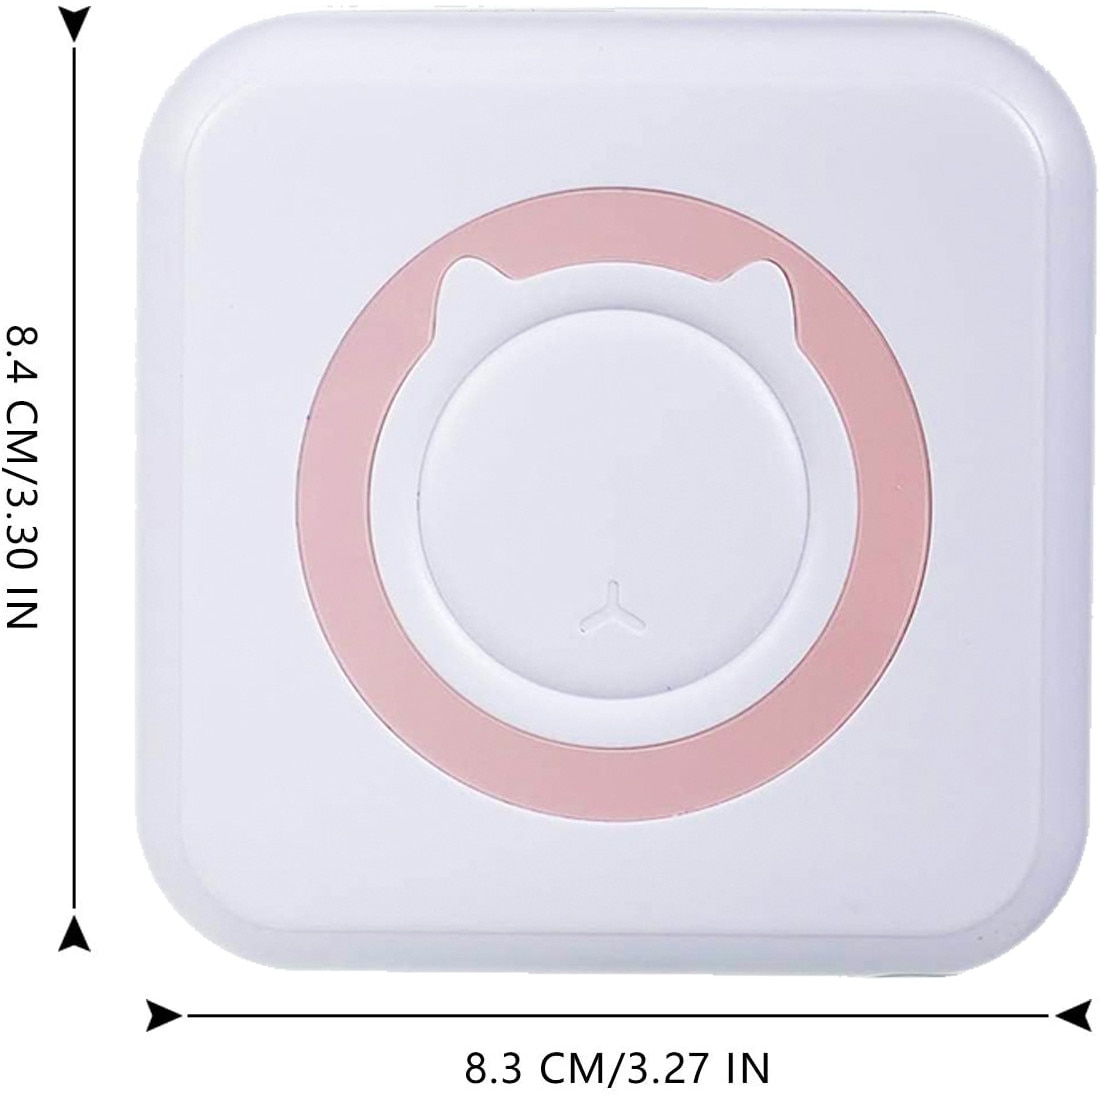 Mini imprimanta pentru telefon + 3 role de hartie termica, Alb cu roz